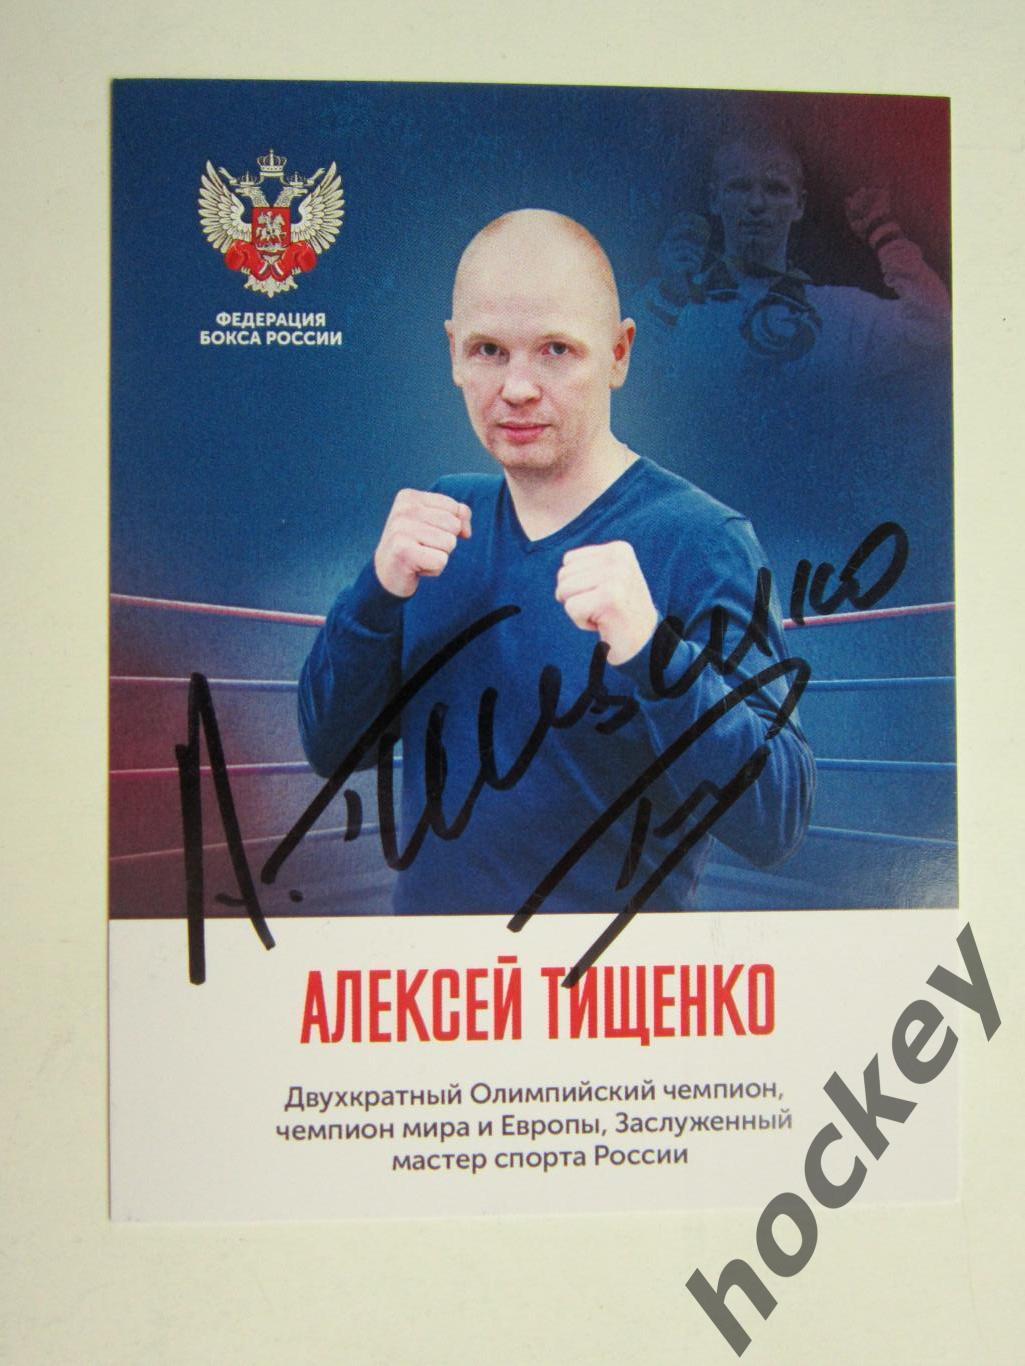 Алексей Тищенко (бокс). Фото-карточка с автографом.